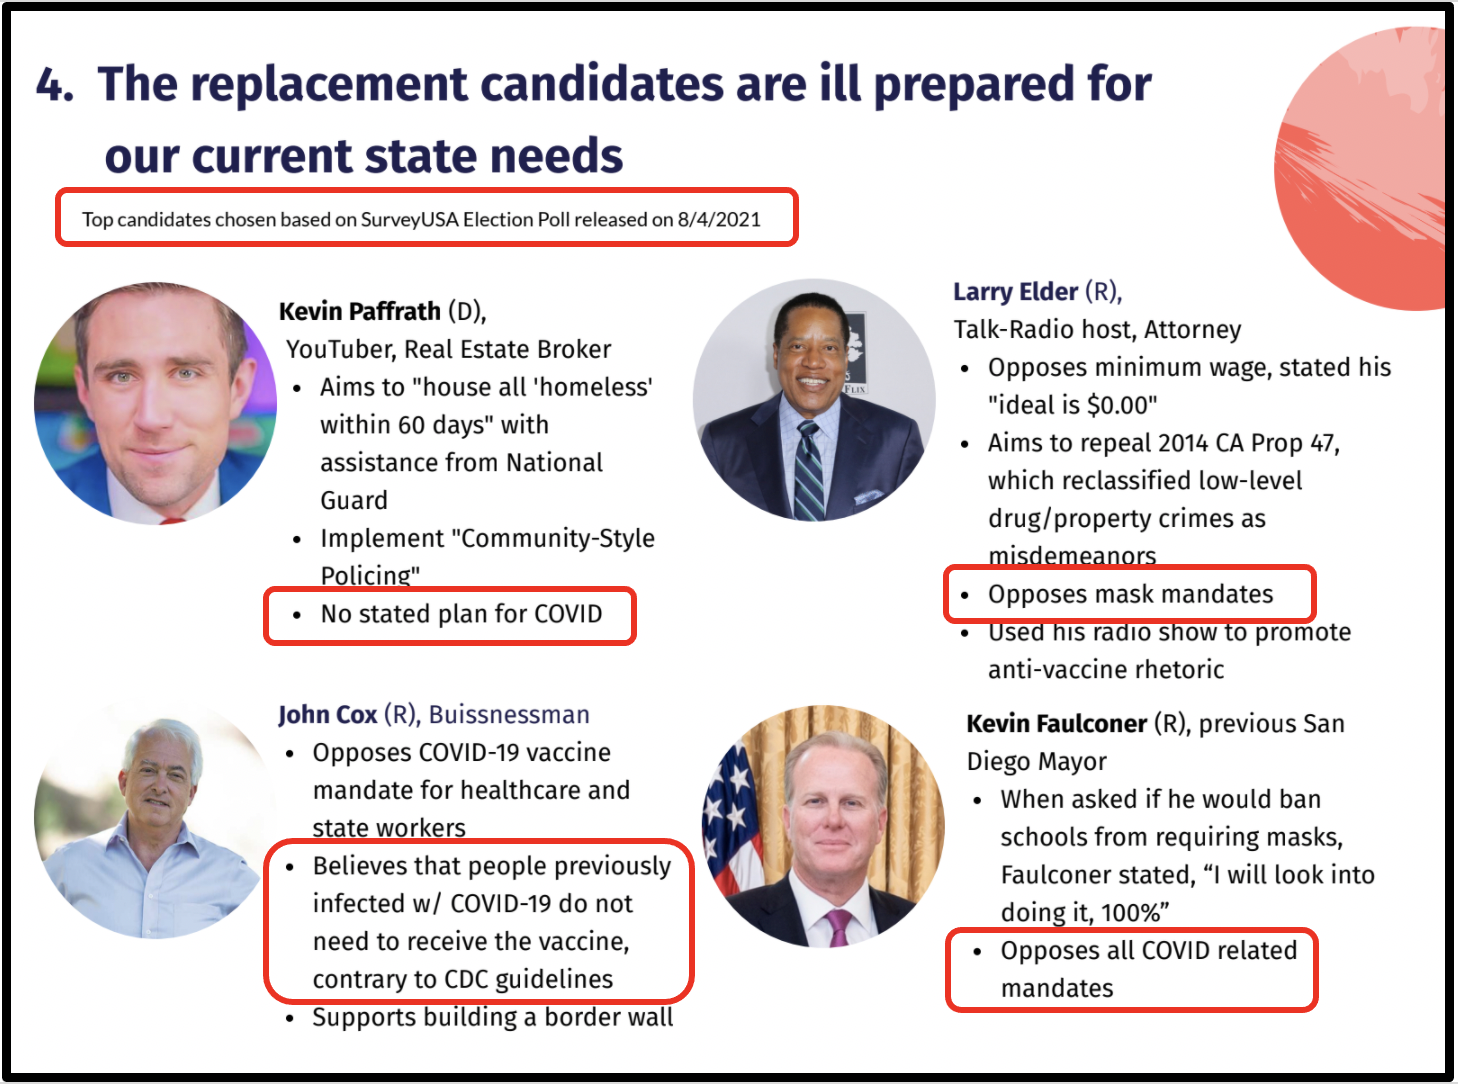 Top Republican candidates are ill prepared to handle COVID healthcare